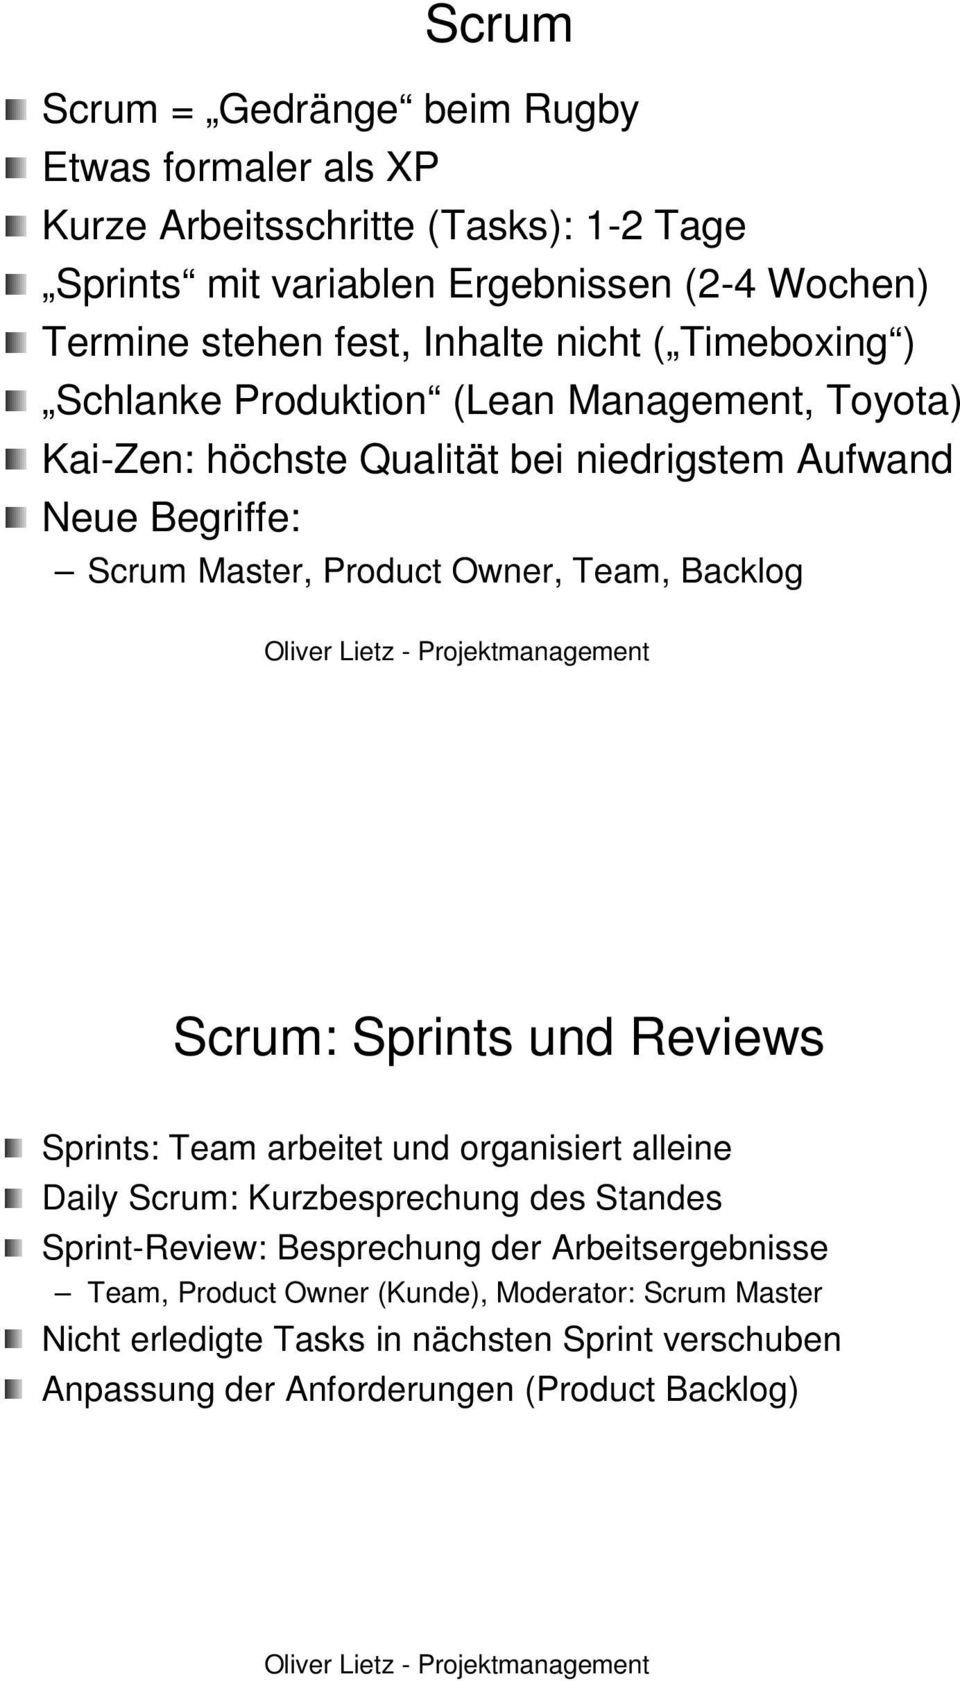 Product Owner,, Team, Backlog Scrum: : Sprints und Reviews Sprints: Team arbeitet und organisiert alleine Daily Scrum: : Kurzbesprechung des Standes Sprint-Review Review: :